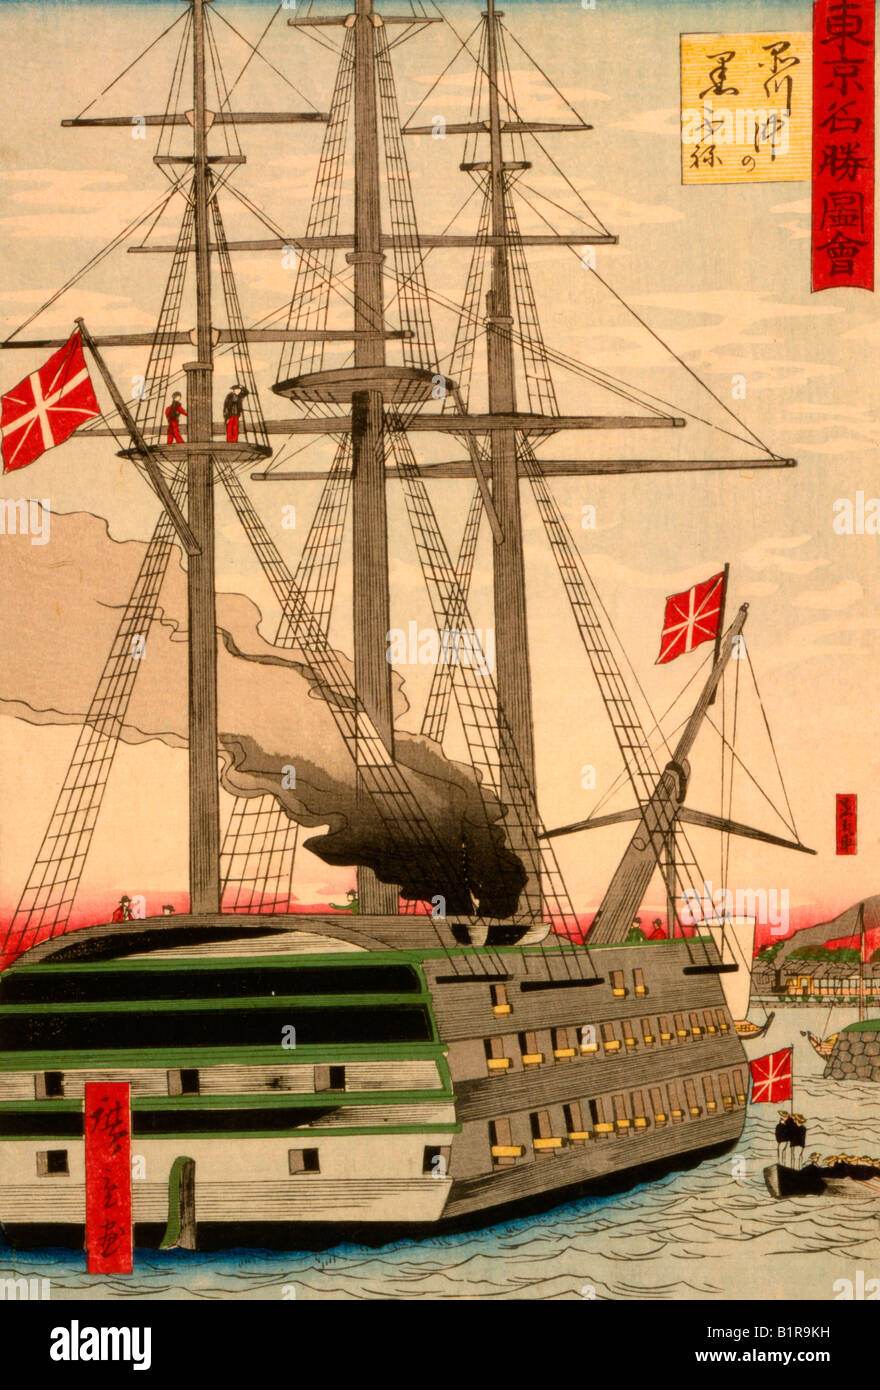 Stampa giapponese mostra nave da guerra con tre alberi e più cannoni inglese del cuscinetto(?) di bandiere e di emettere un grande pennacchio di SMO Foto Stock